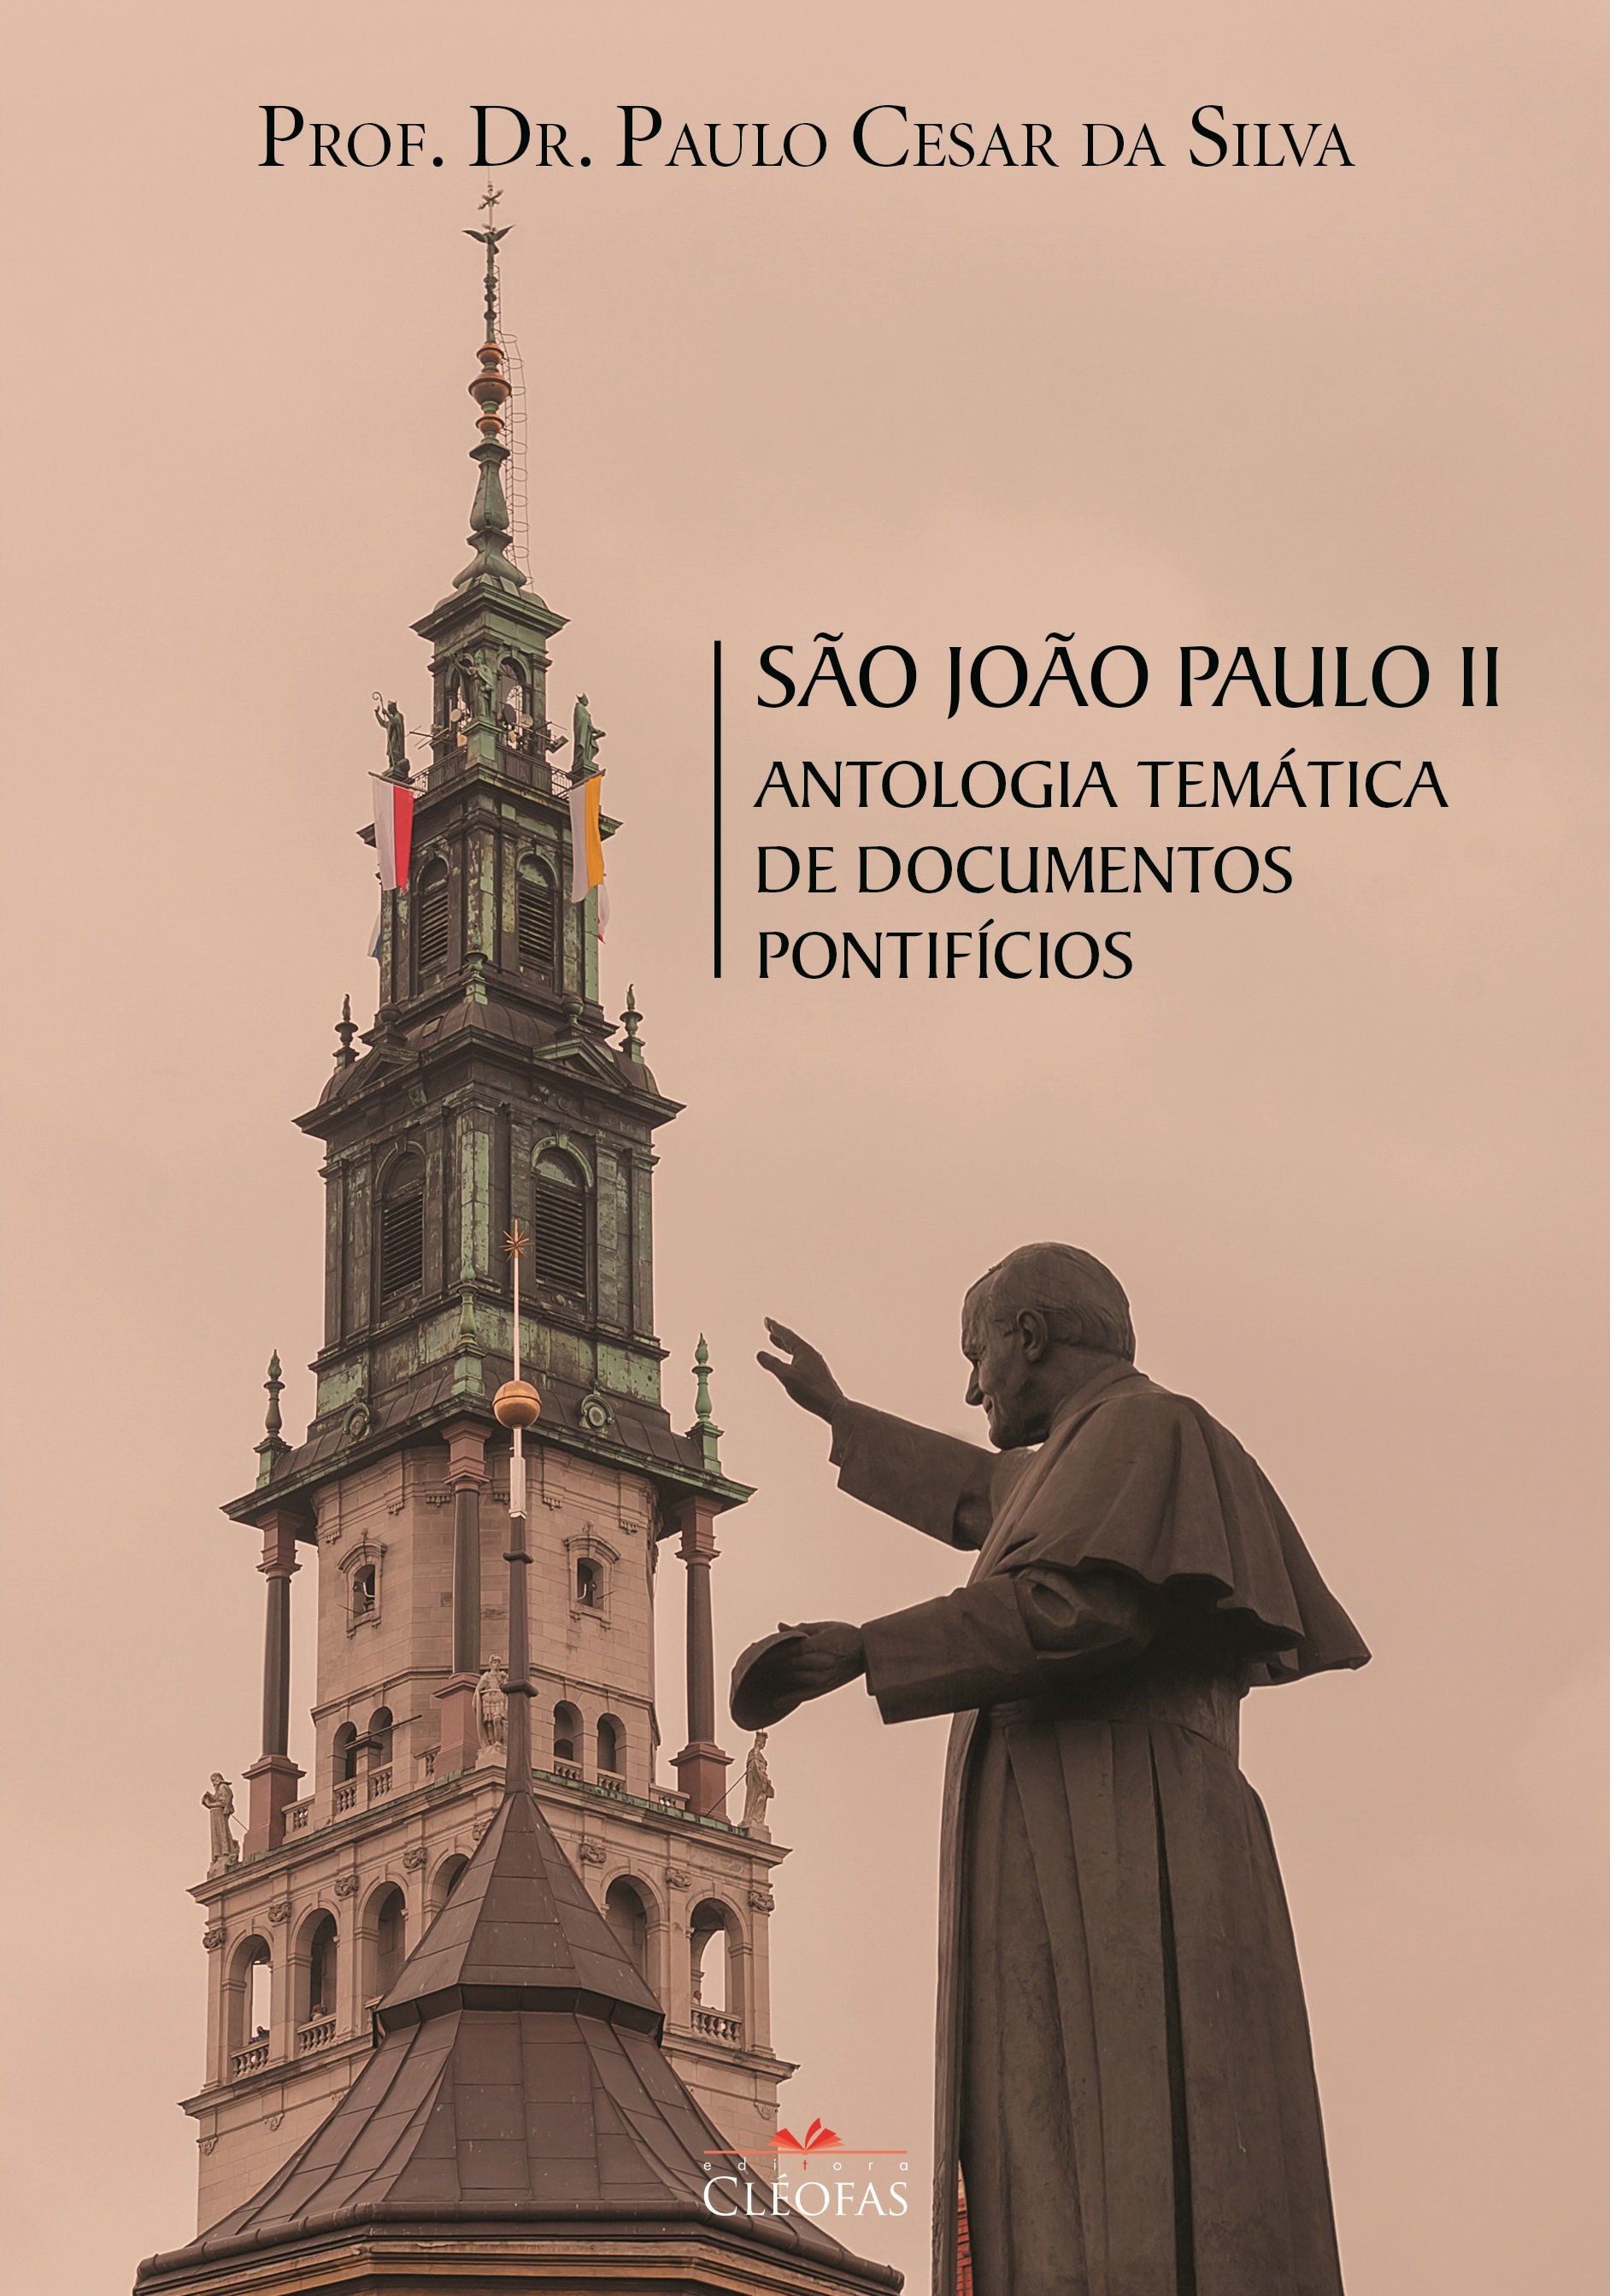 São João Paulo II - Antologia temática de Documentos Pontifícios